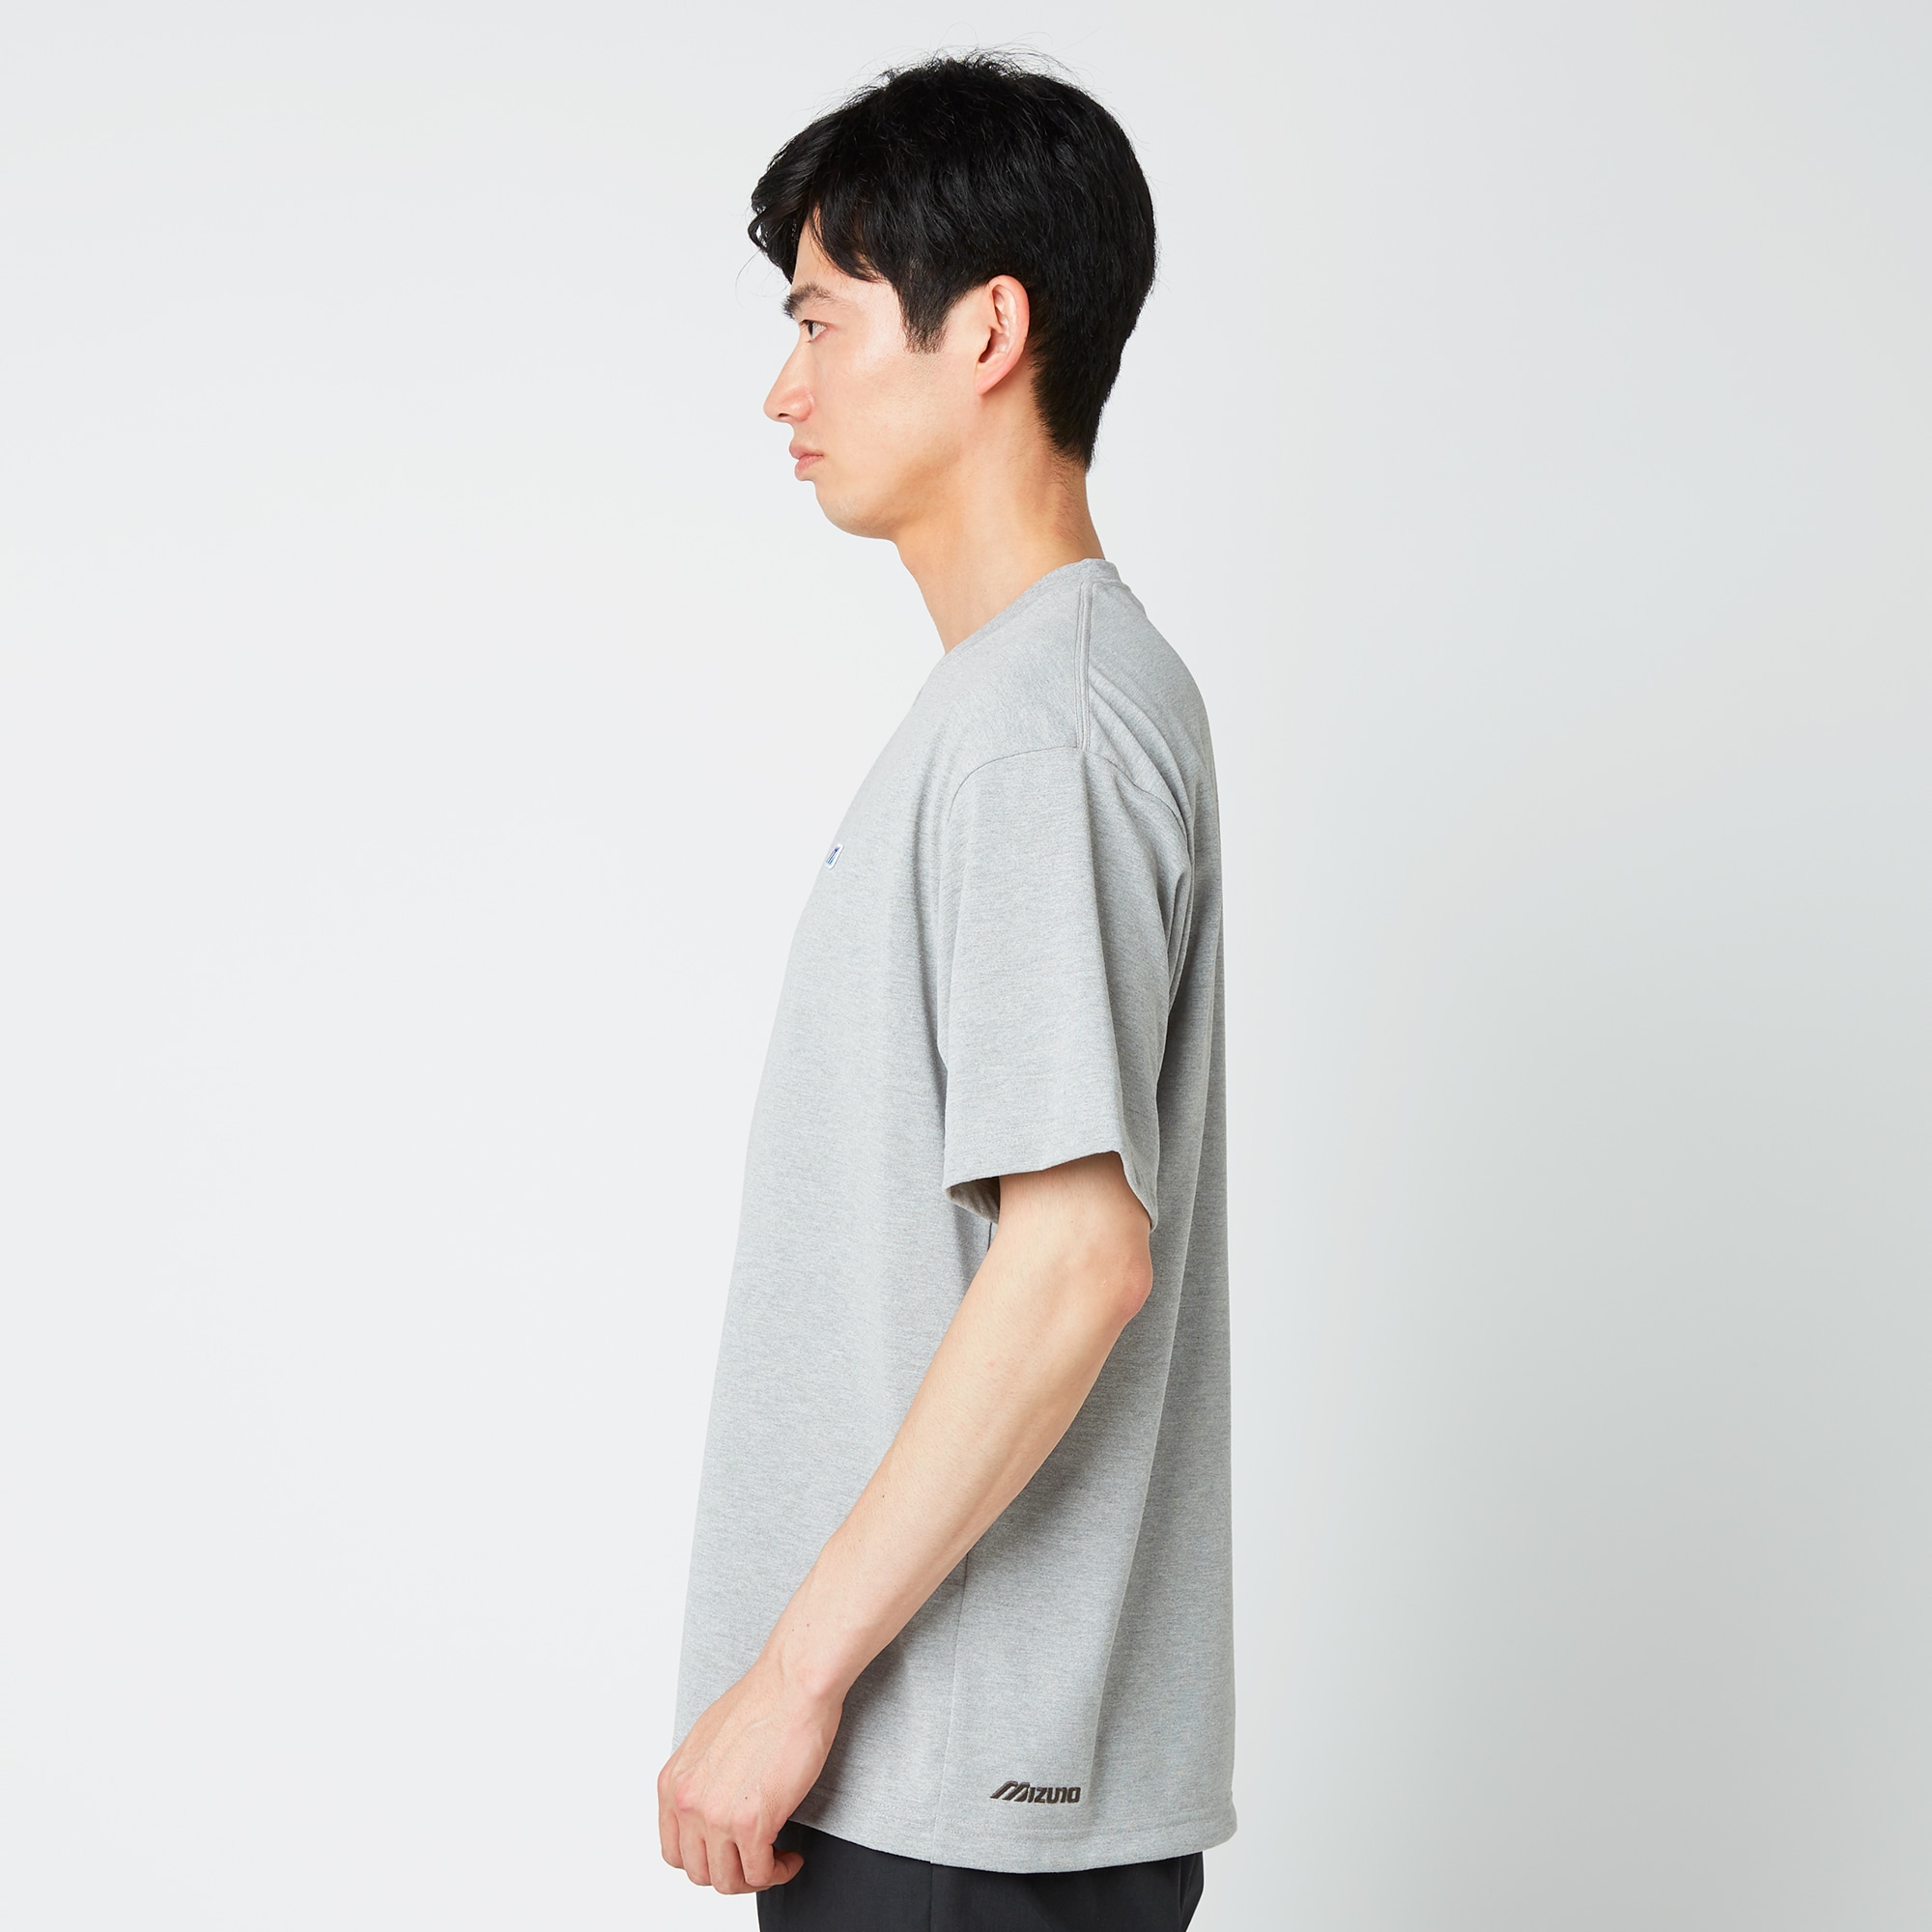 モノグラムM Tシャツ[ユニセックス]|B2JAA001|Go to by mizuno 